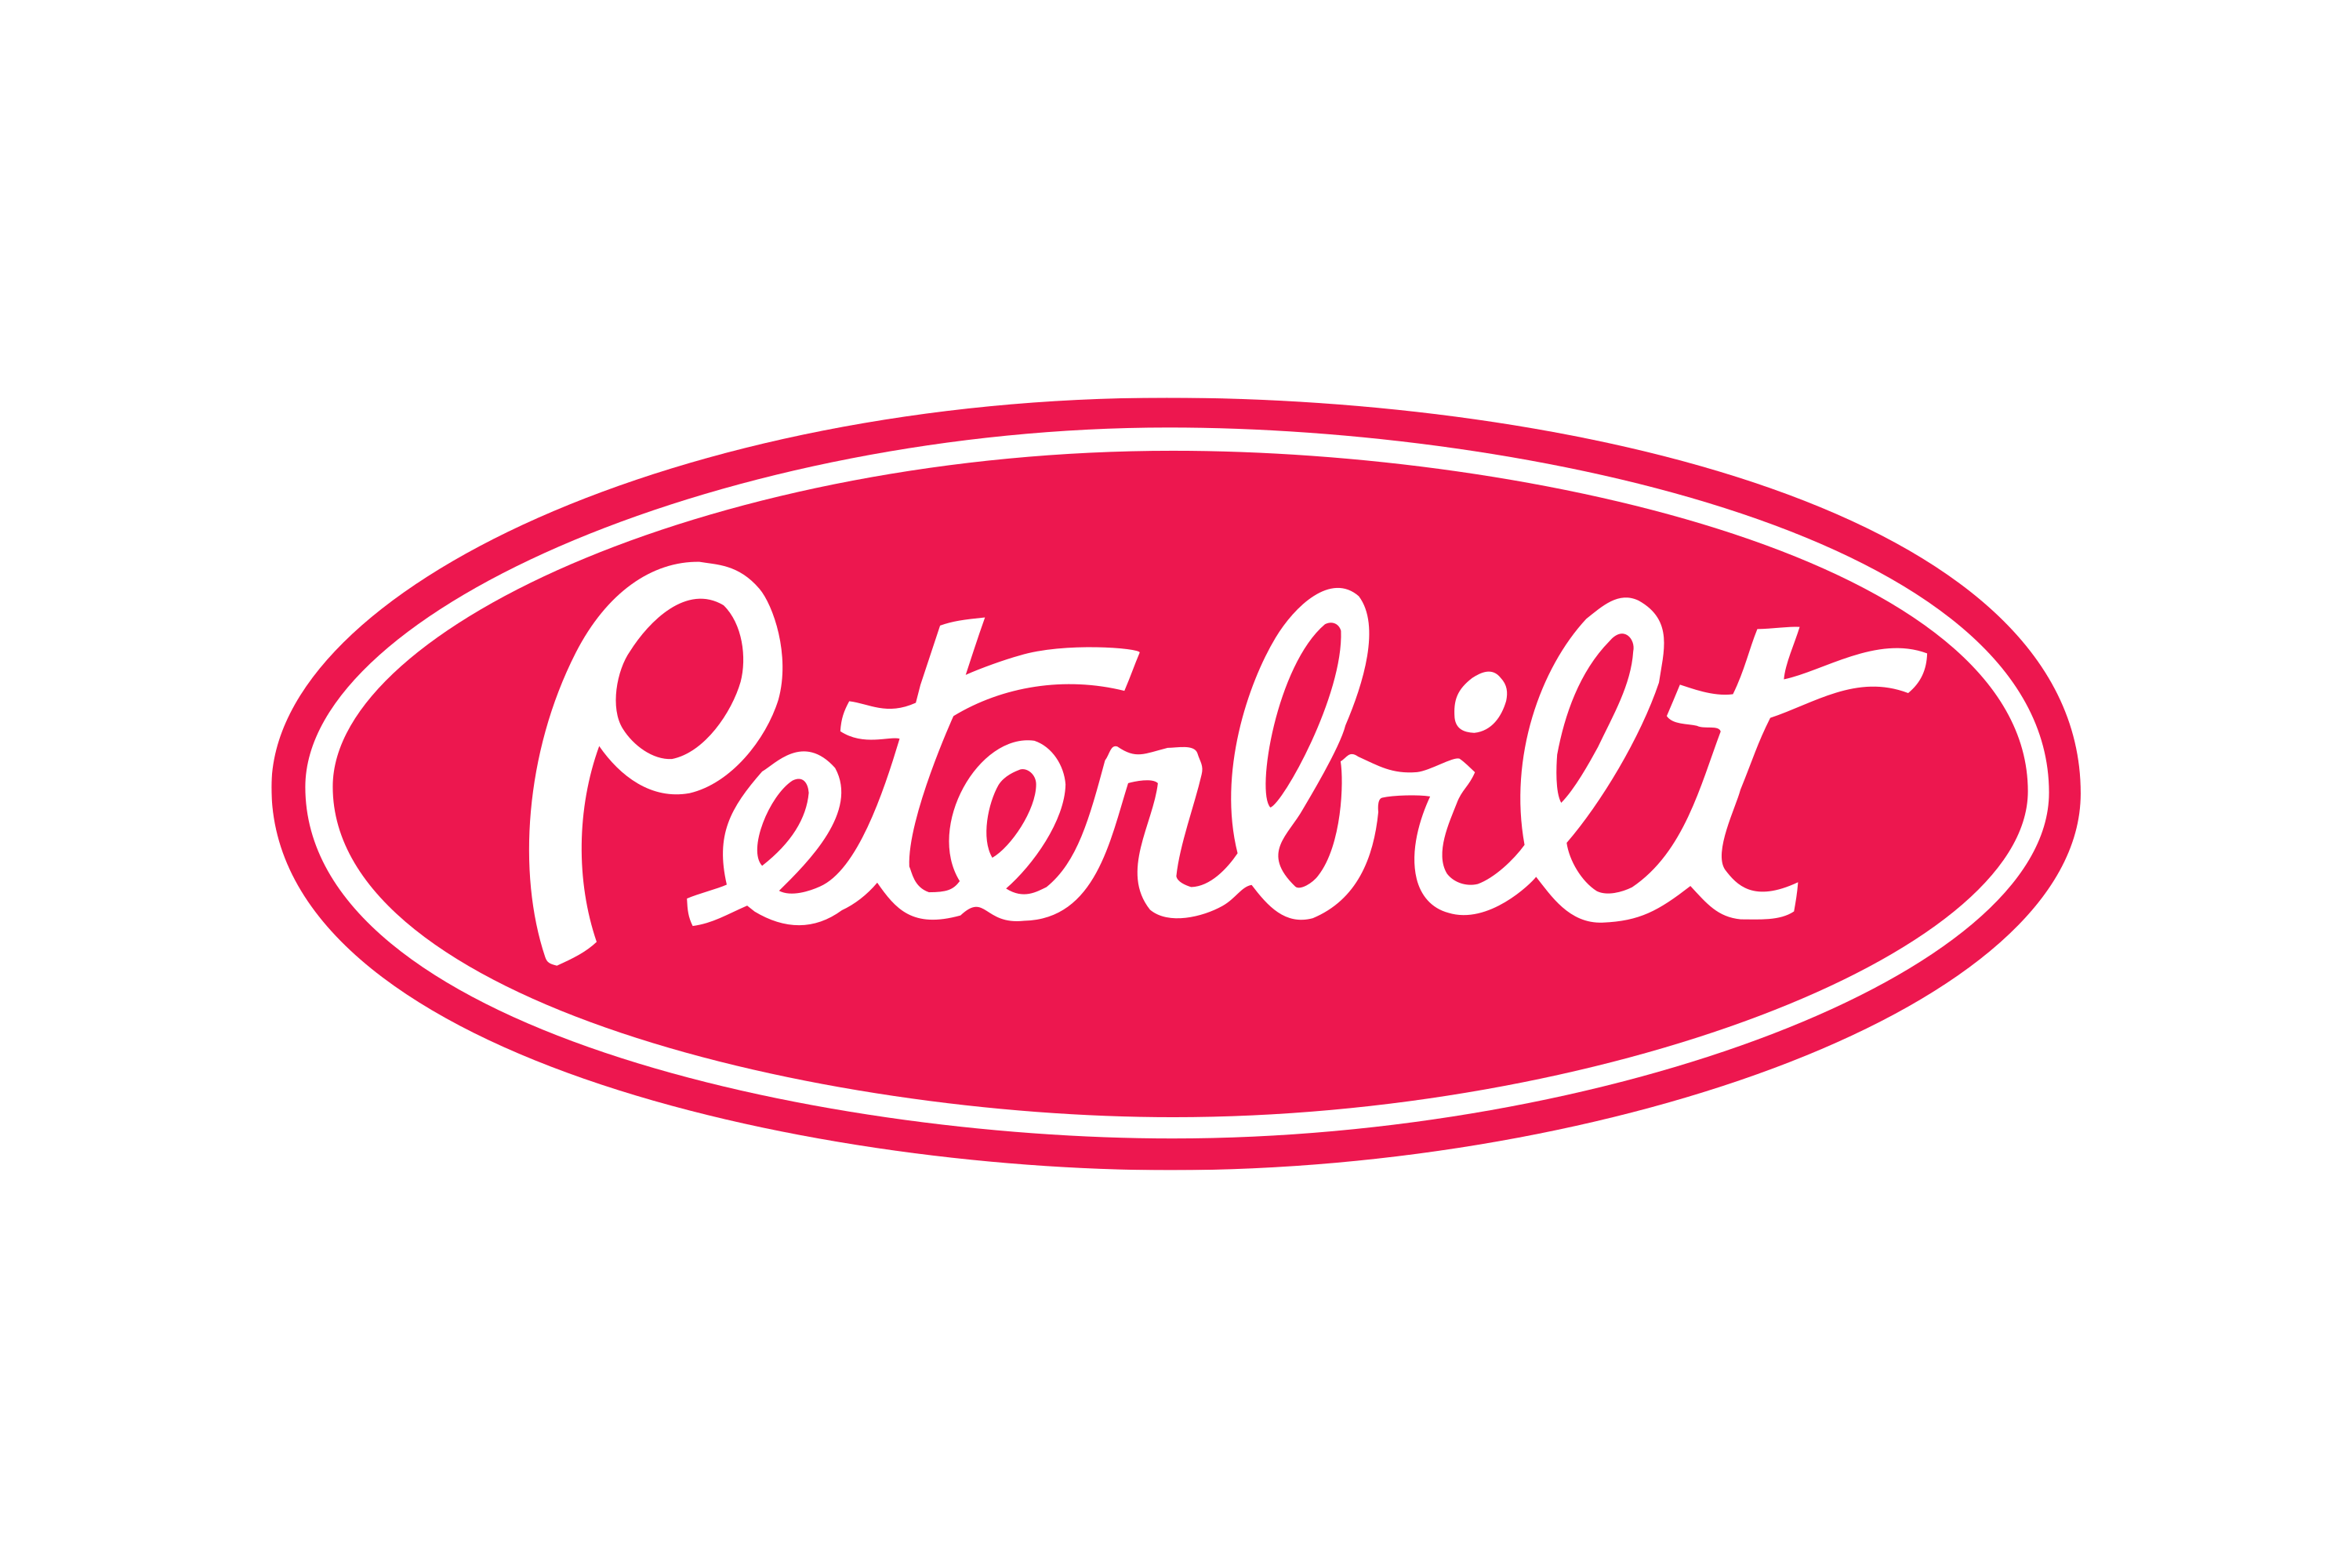 Download Peterbilt Logo in SVG Vector or PNG File Format - Logo.wine